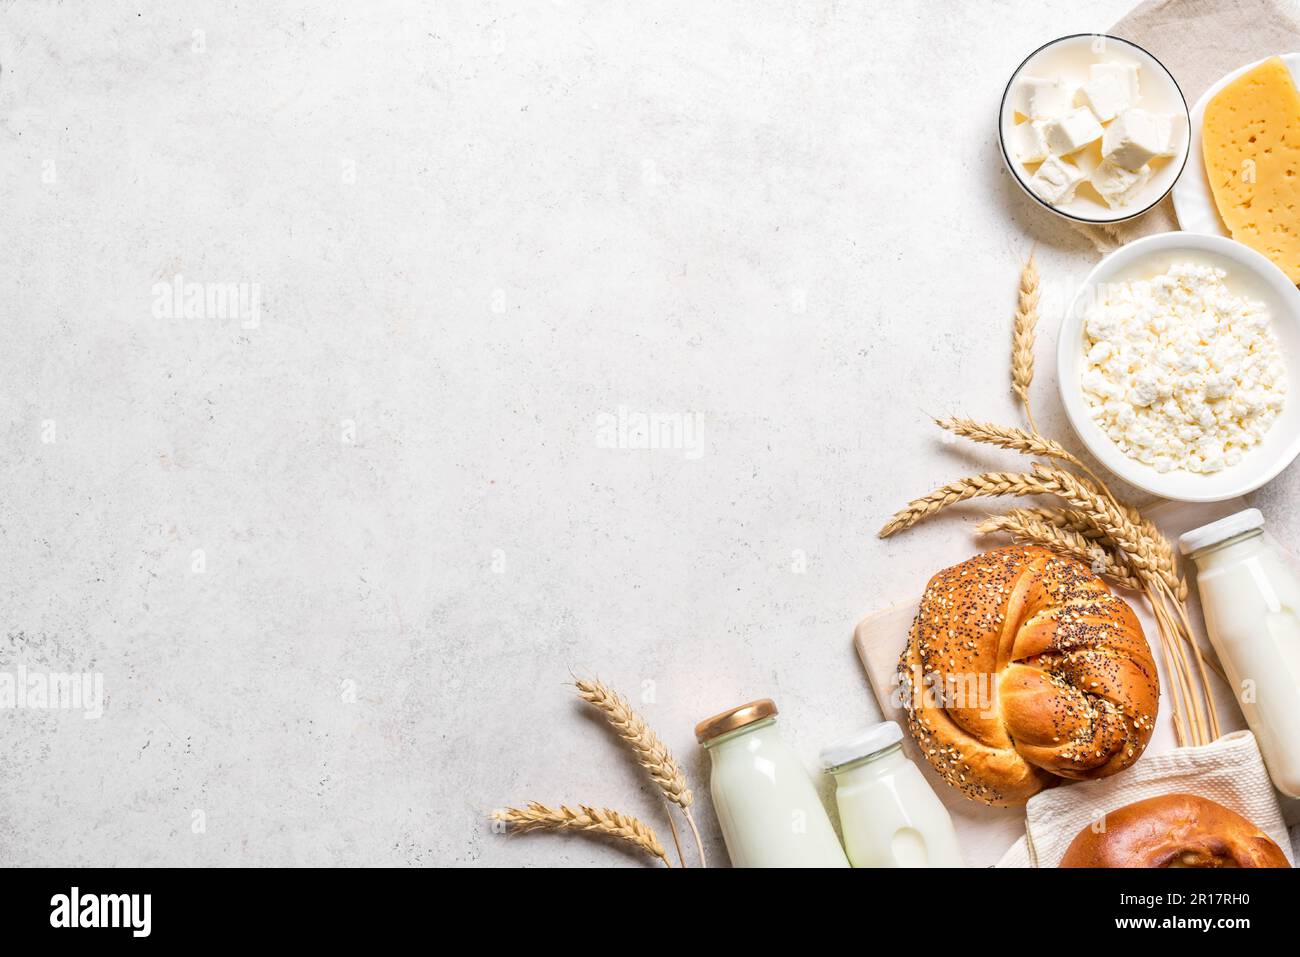 Happy Shavuot - religiöses jüdisches Urlaubskonzept mit Milchprodukten, Käse, traditionellem Brot, Milchflaschen, Weizen auf weißem Hintergrund, Kopierbereich. Stockfoto